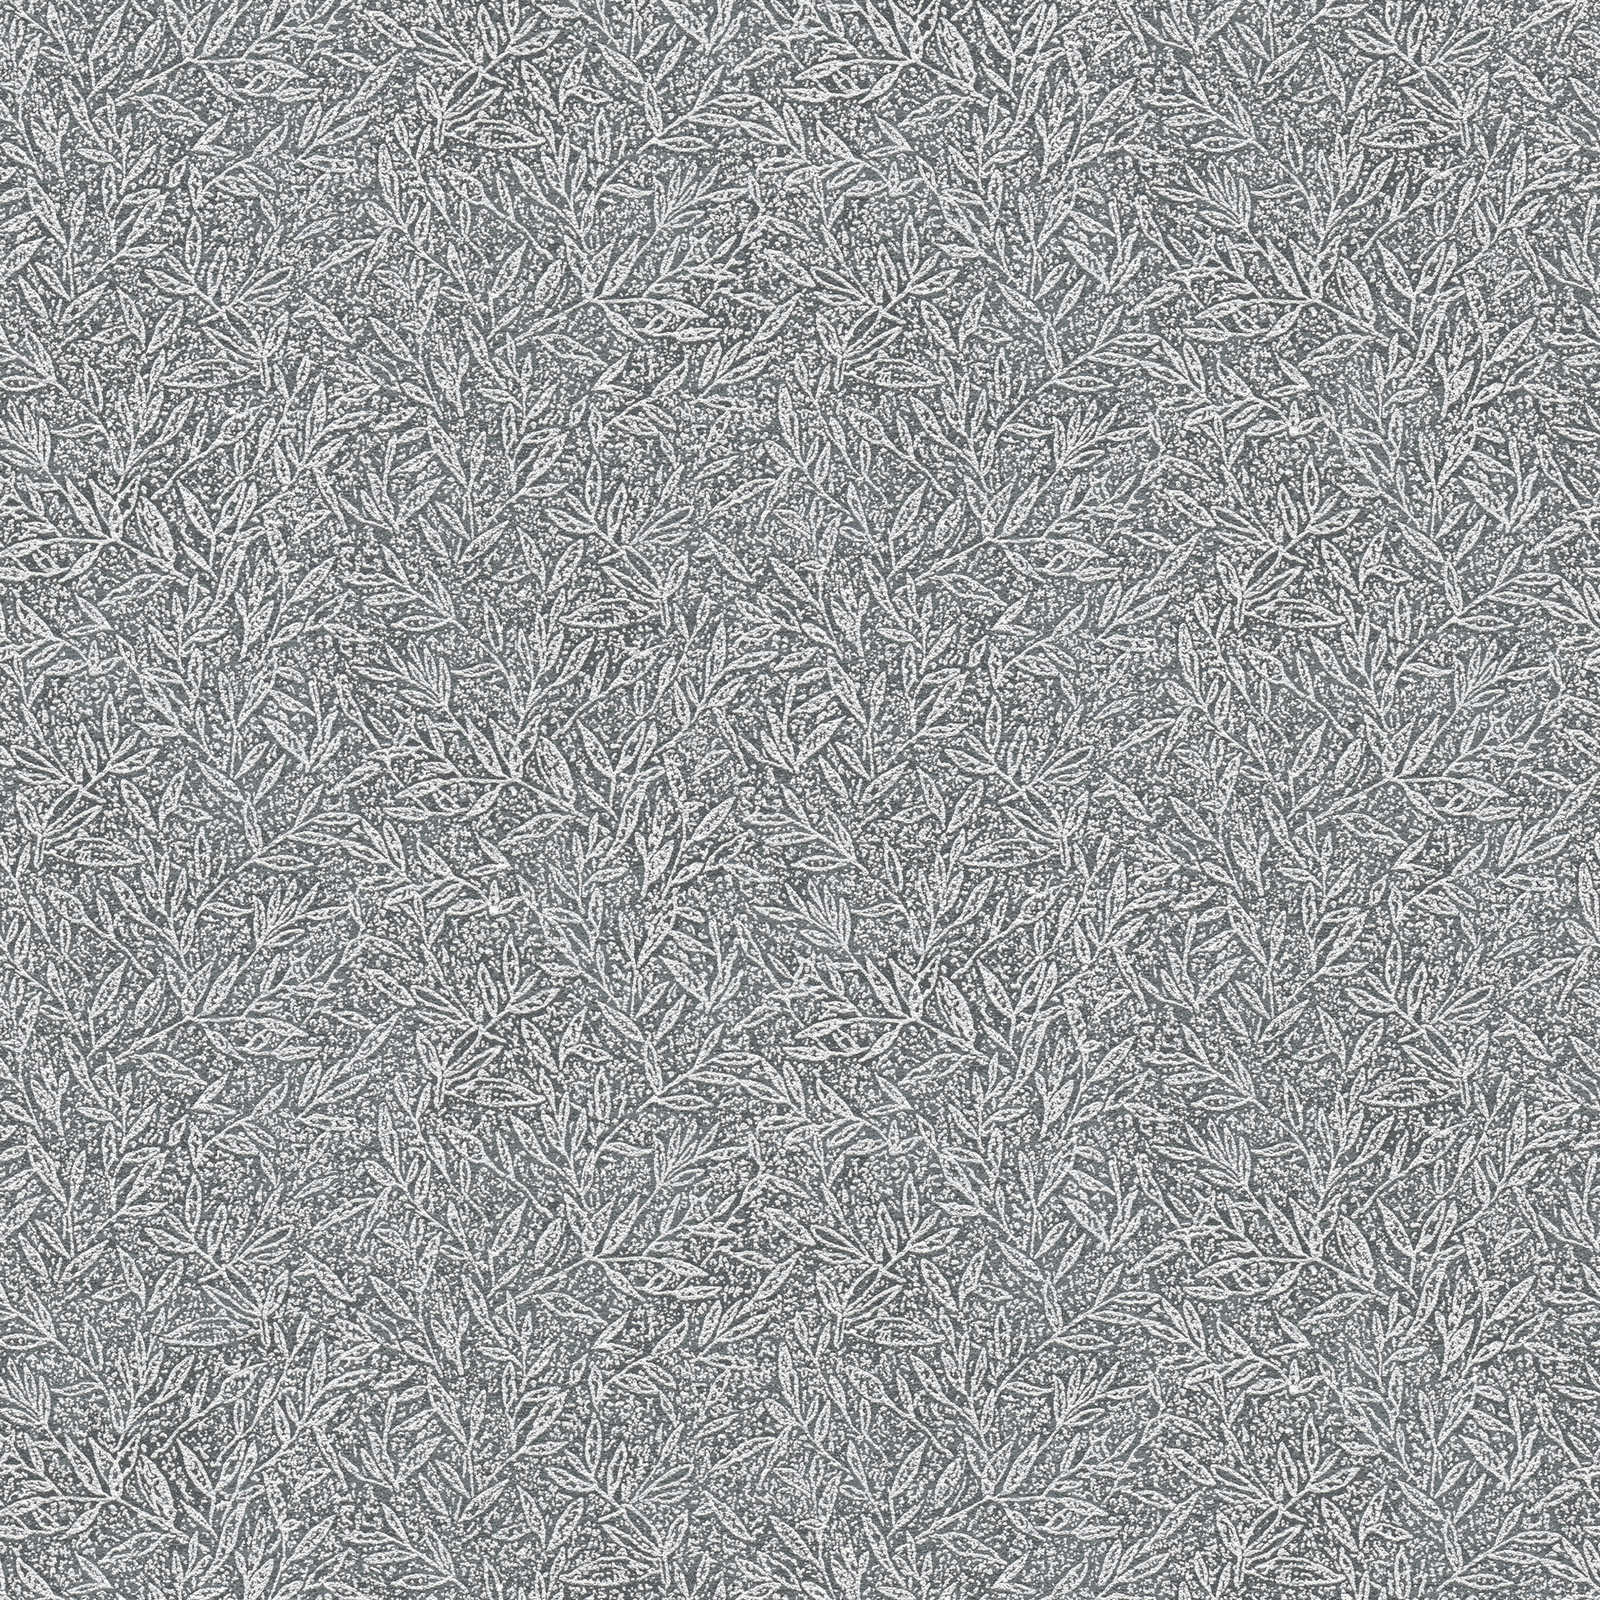 Pattern wallpaper botanical & leaves pattern - grey, metallic
